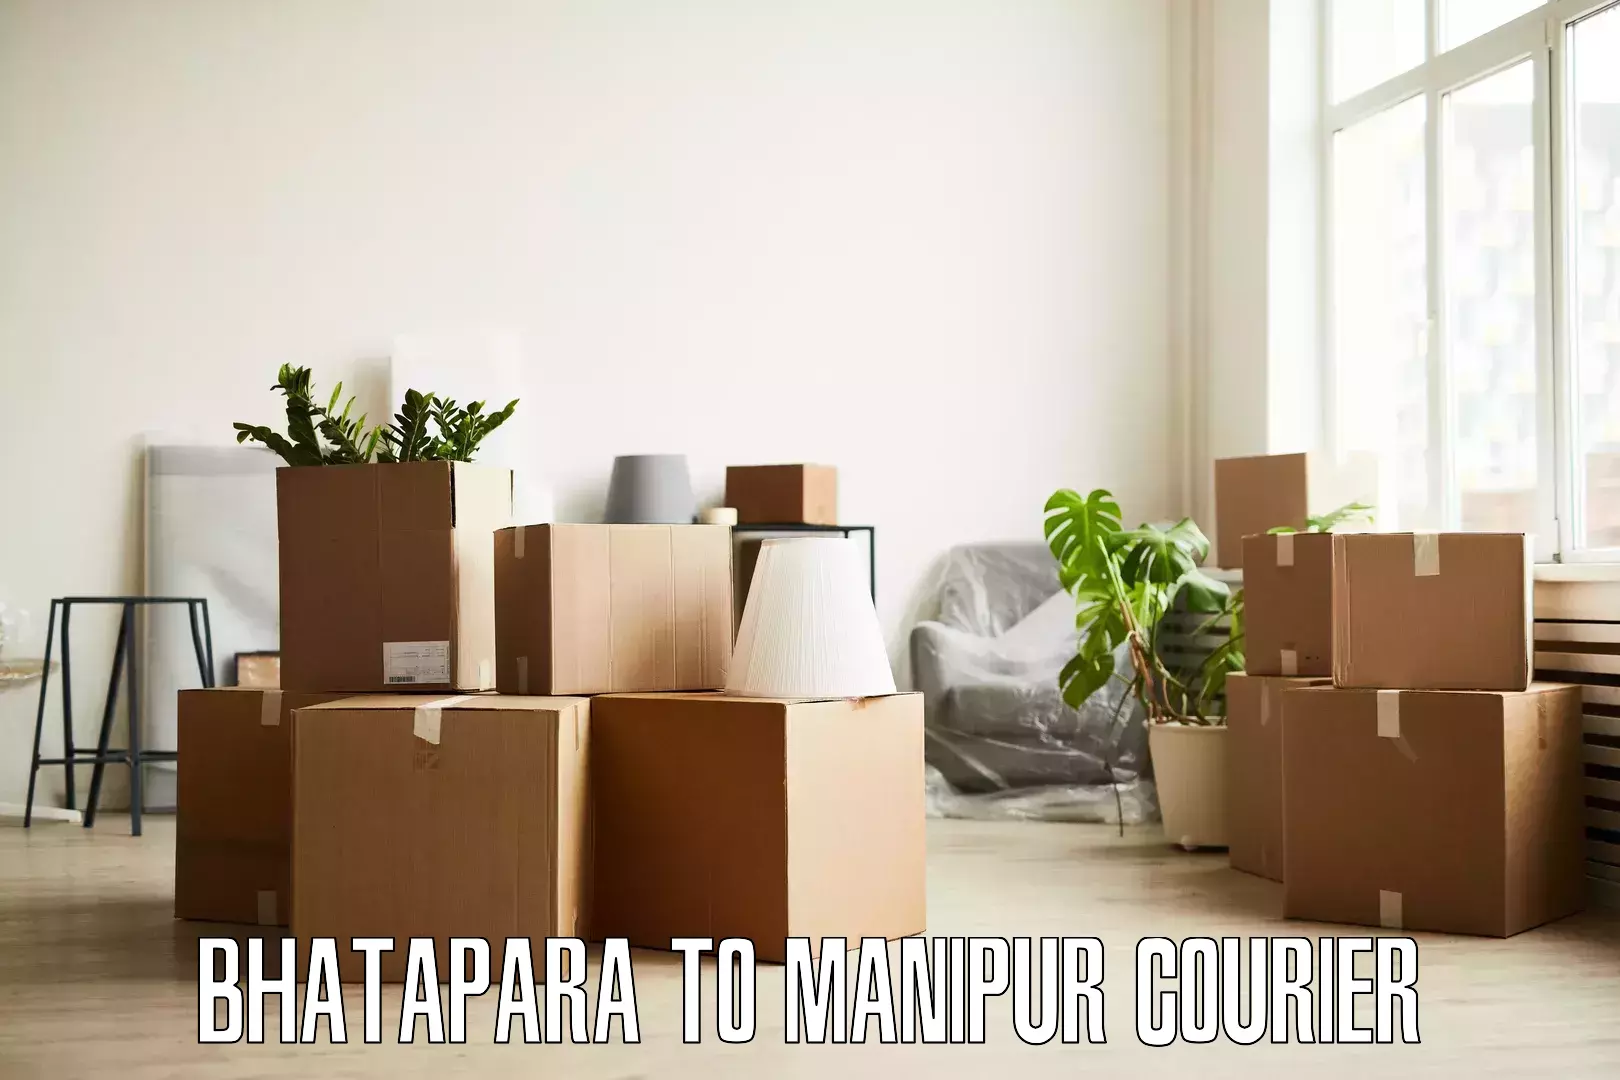 Home shifting experts Bhatapara to Moirang